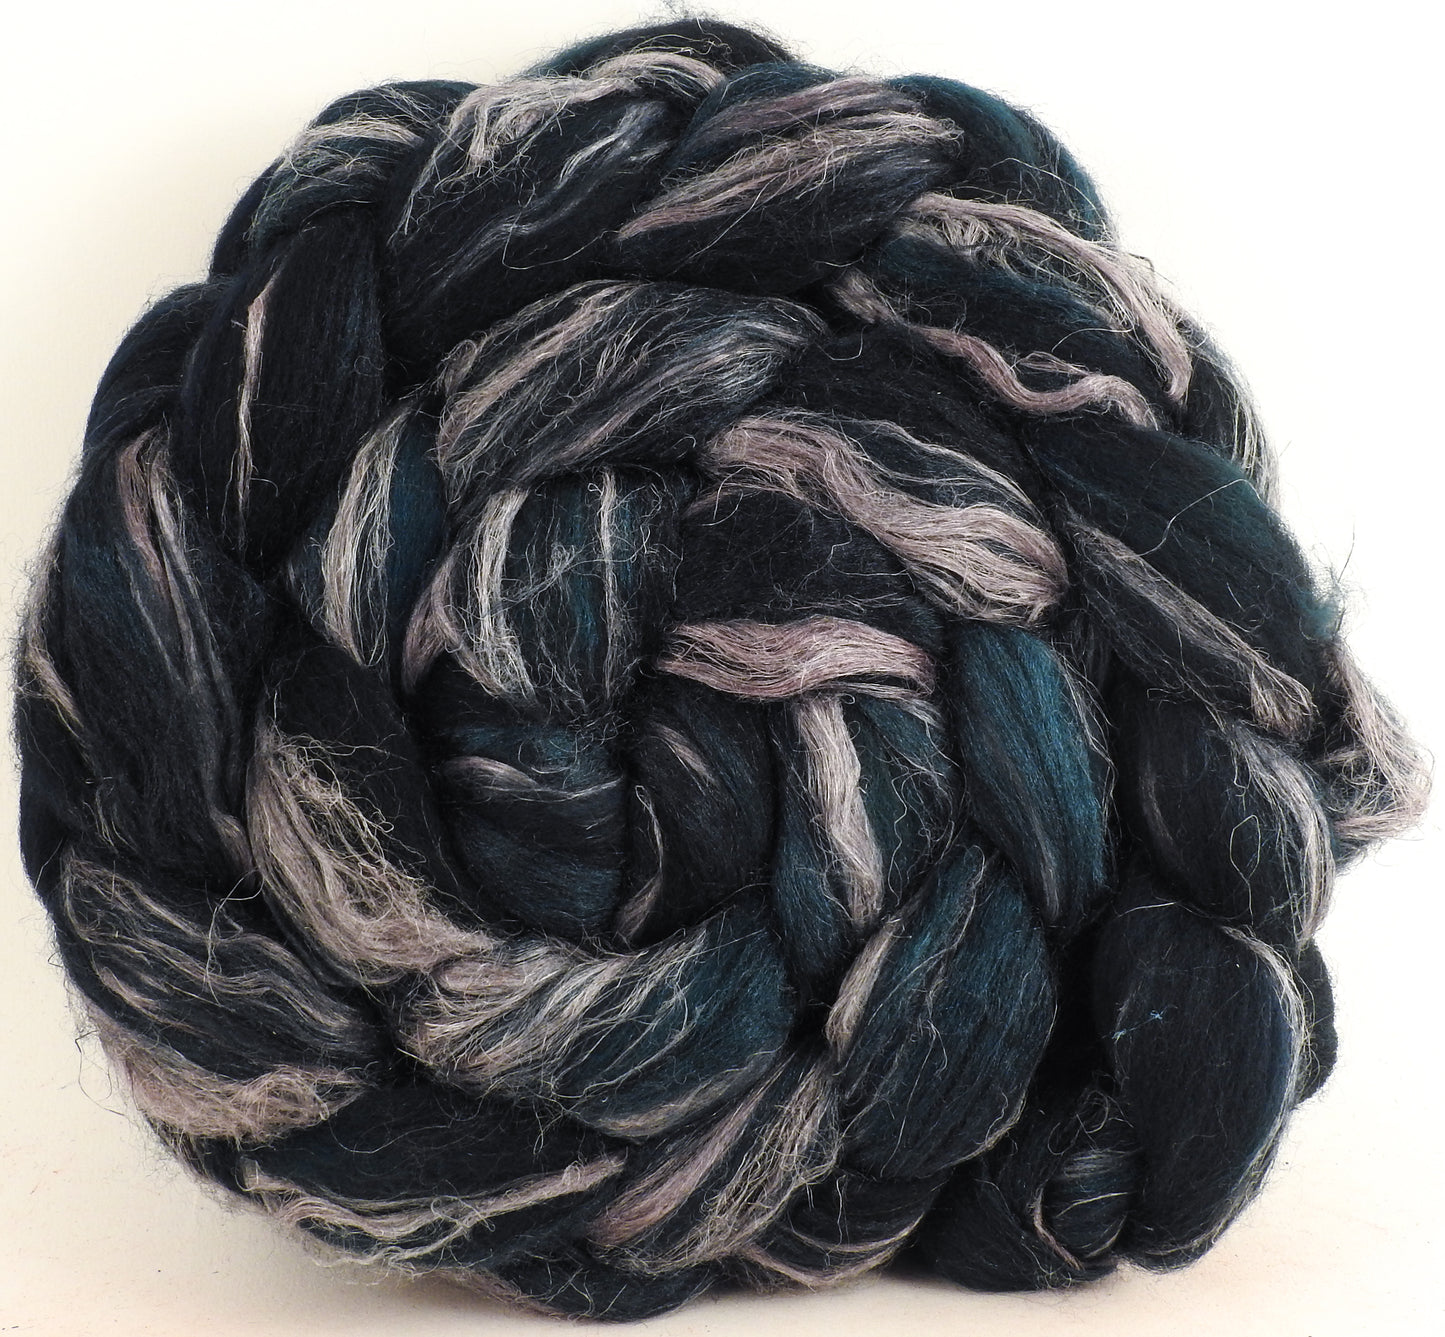 Leviathan - Merino/ Tussah Silk/ Natural Flax (50/25/25) - 5.4 oz.